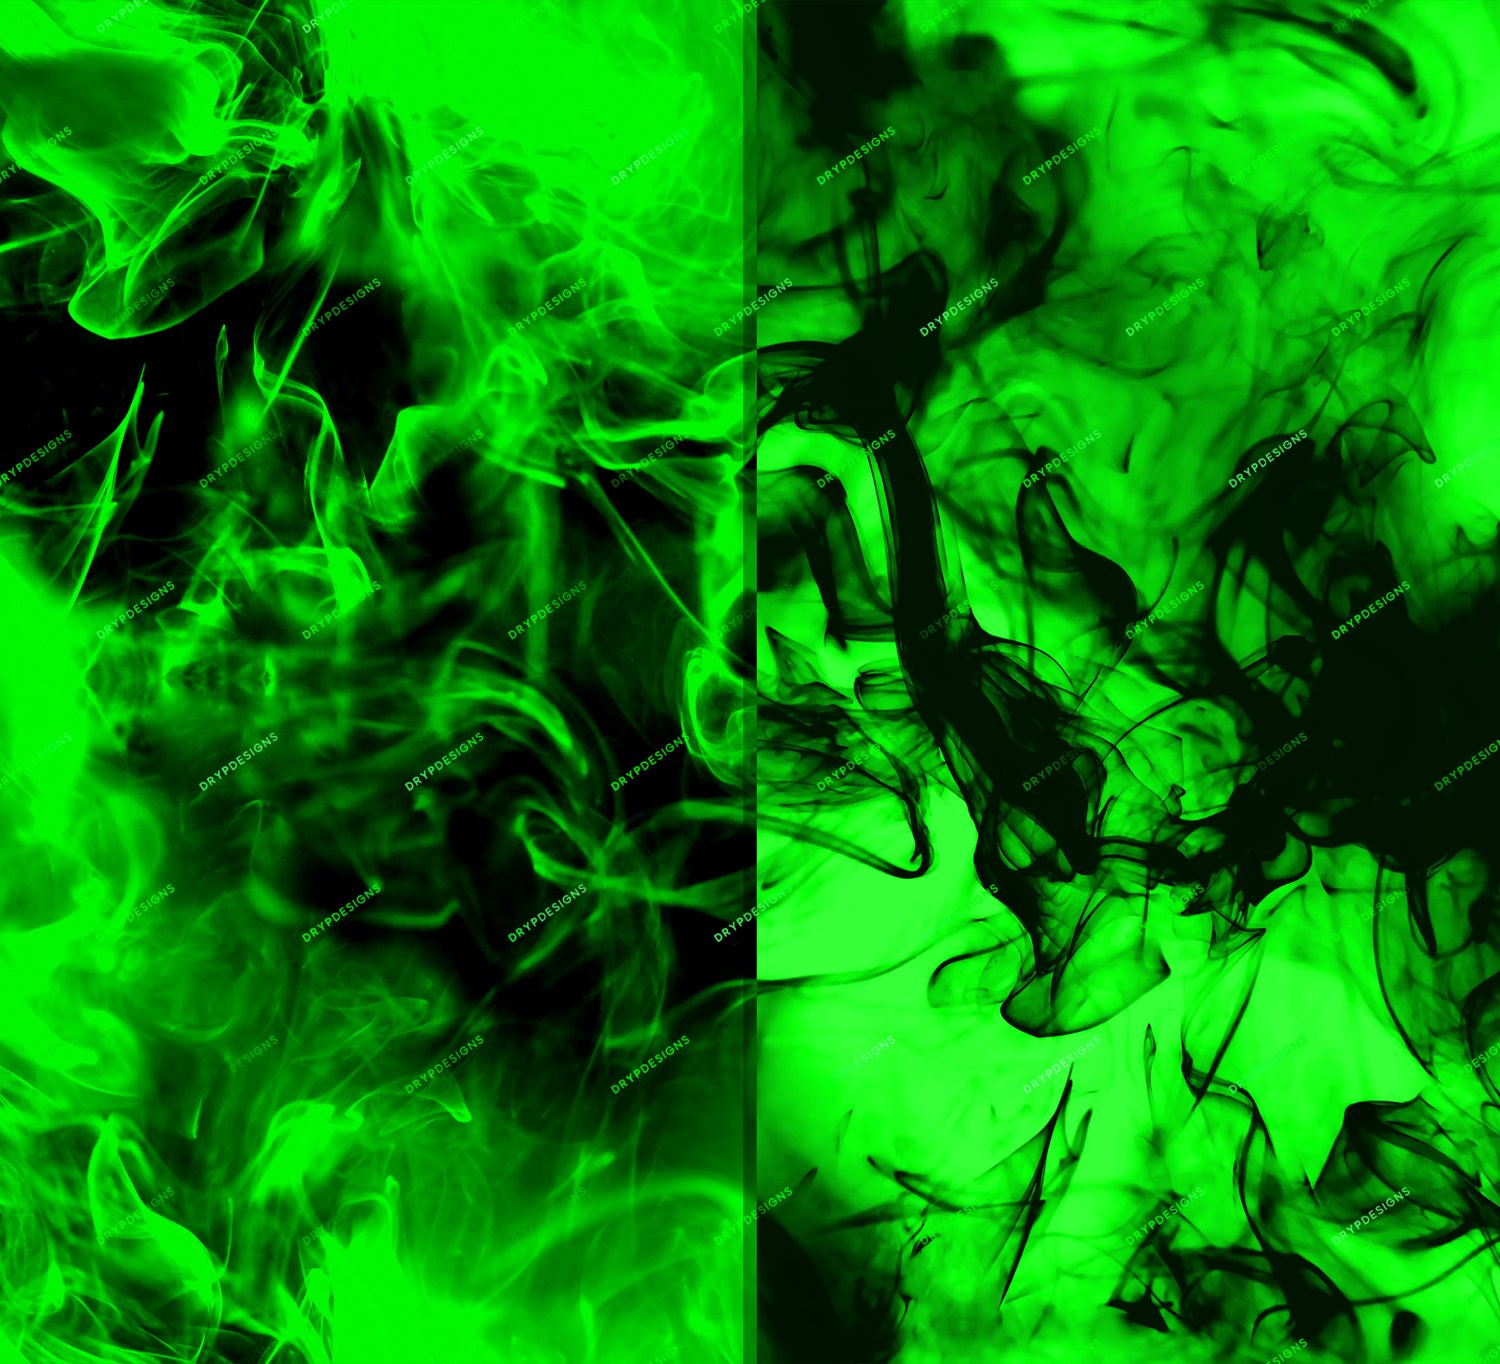 Nền đen mờ mảng xanh lá cây cháy: Với hình nền nền đen mờ mảng xanh lá cây cháy, bạn sẽ trải nghiệm một không gian tối và lạnh lẽo nhưng cũng đầy sức sống. Màu xanh lá cây sẽ làm nổi bật vẻ đẹp và sự tươi trẻ cho hình ảnh này. Hãy dành chút thời gian để tìm hiểu về hình nền này và trải nghiệm một trải nghiệm cảm xúc khác biệt trên máy tính của bạn.